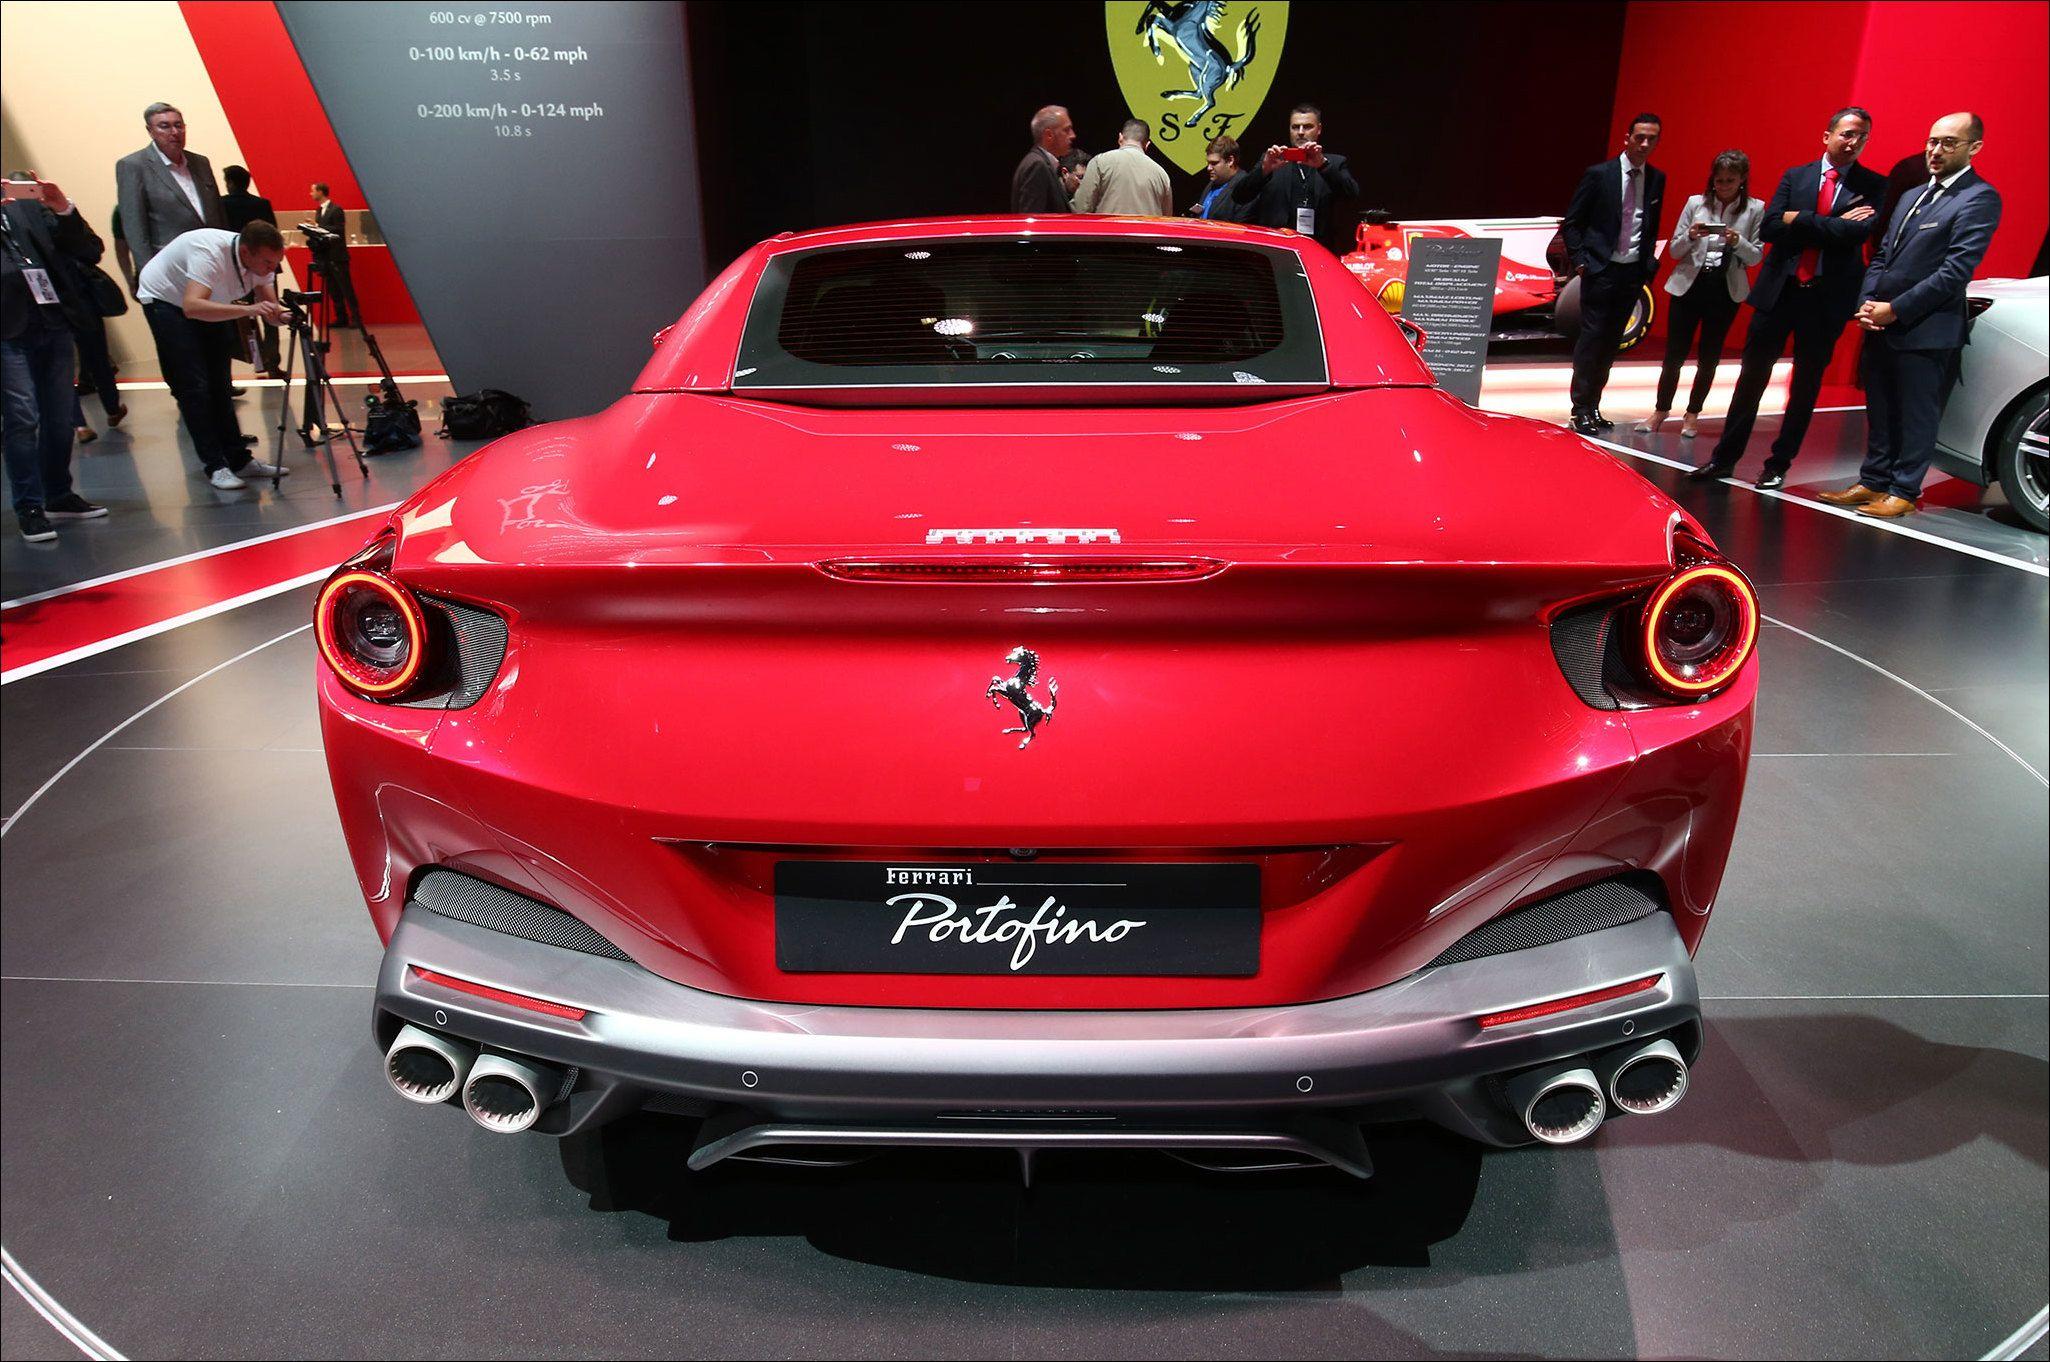 Ferrari Portofino At Auto Show Rear View. Cool Car